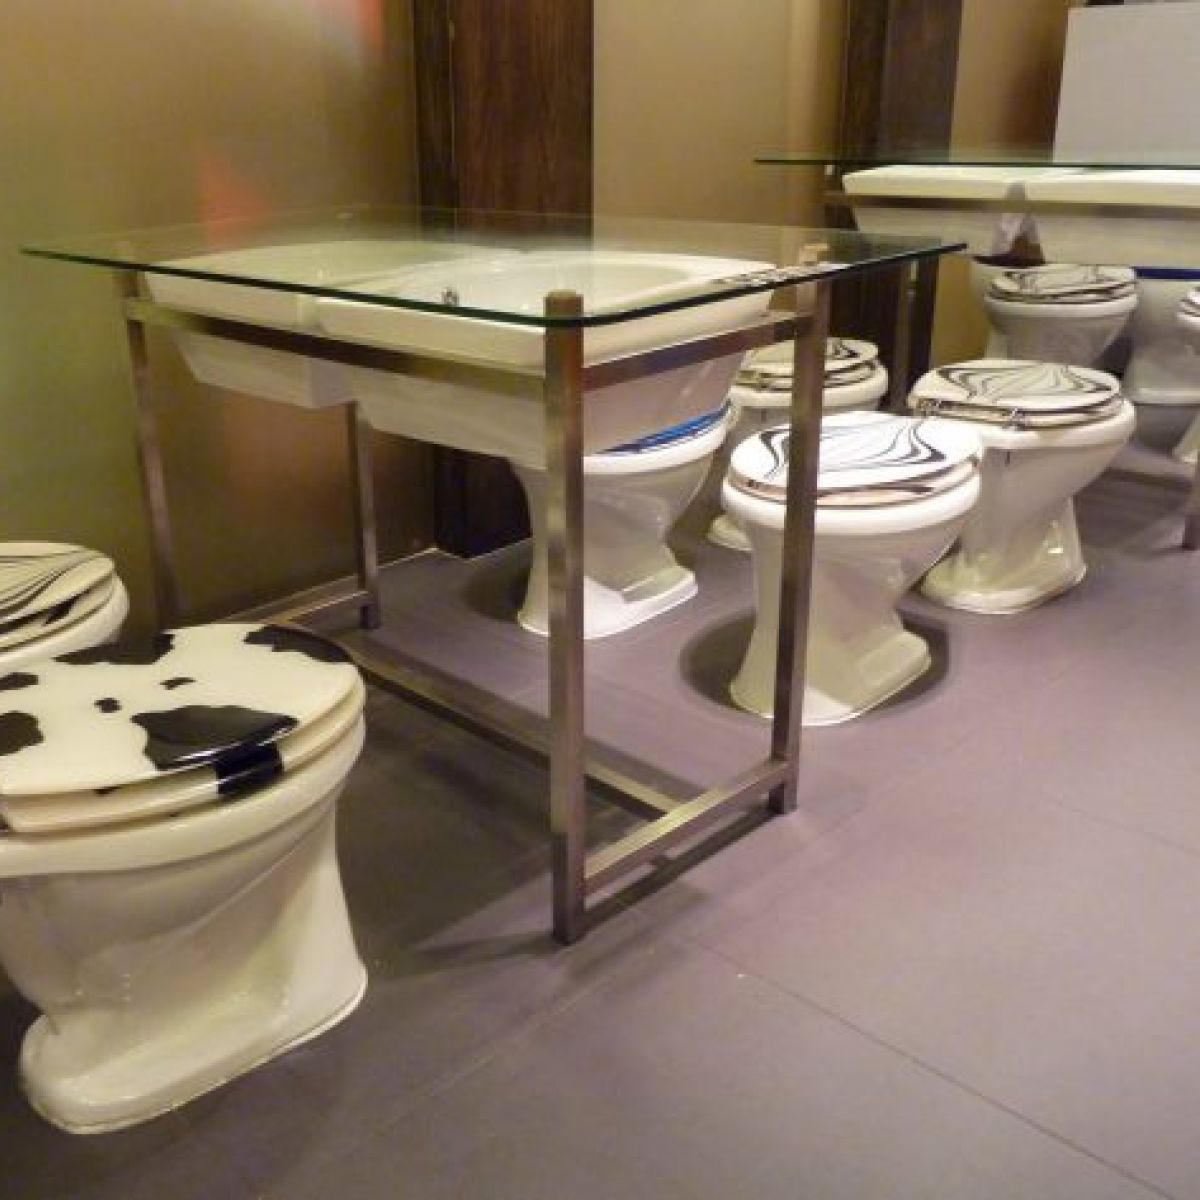 Restauracja o nazwie ''Modern Toilet'' - niemożliwe?